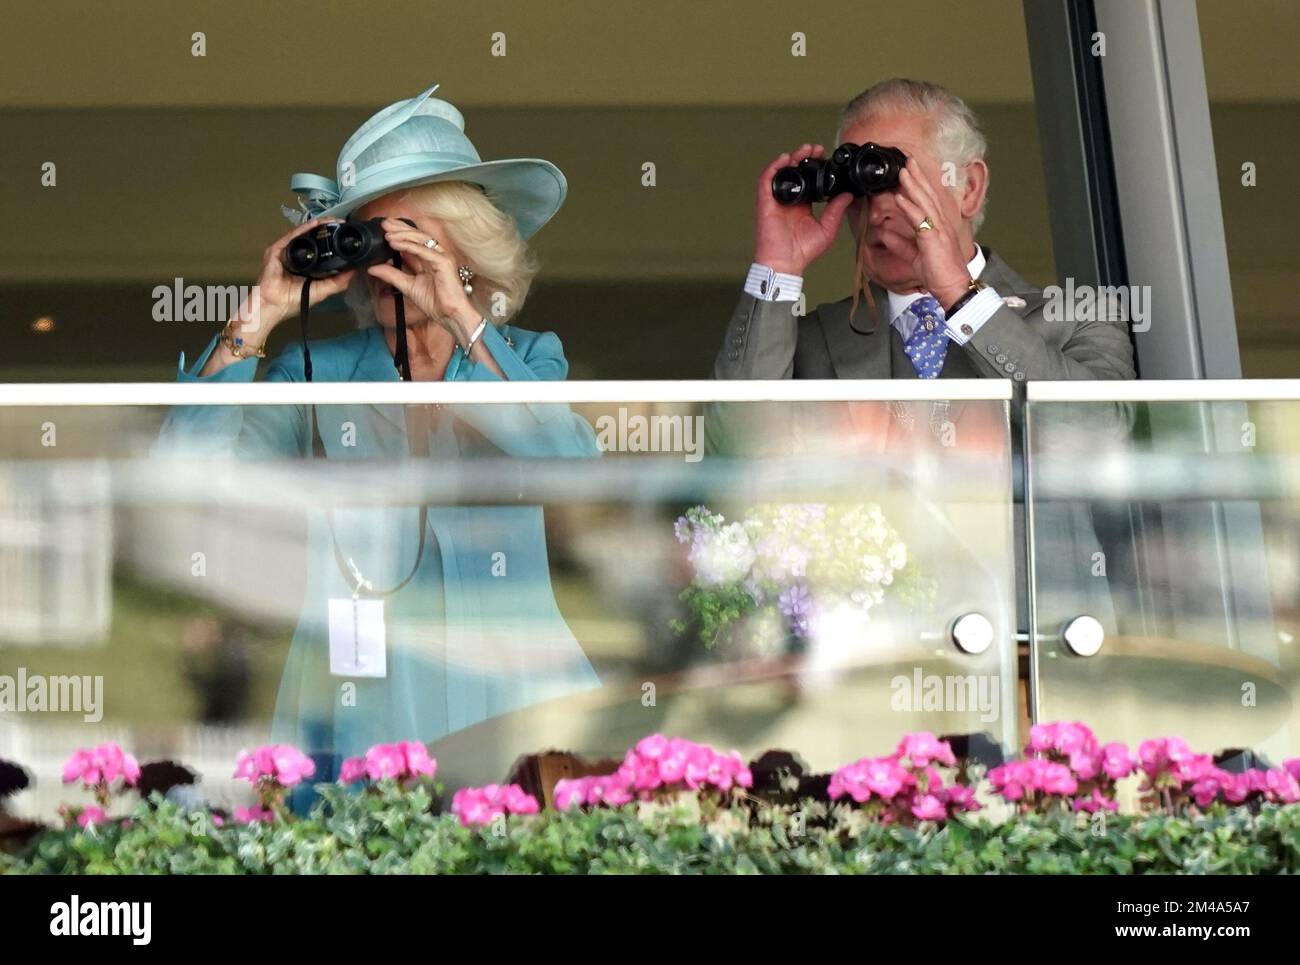 AP REVIEW OF THE YEAR 2022 photo du dossier datée du 14/06/22 - la duchesse de Cornwall et le prince de Galles regardent le King's Stand à travers des jumelles dans les stands pendant la première journée de Royal Ascot à l'hippodrome d'Ascot. Date de publication : mardi 20 décembre 2022. Banque D'Images